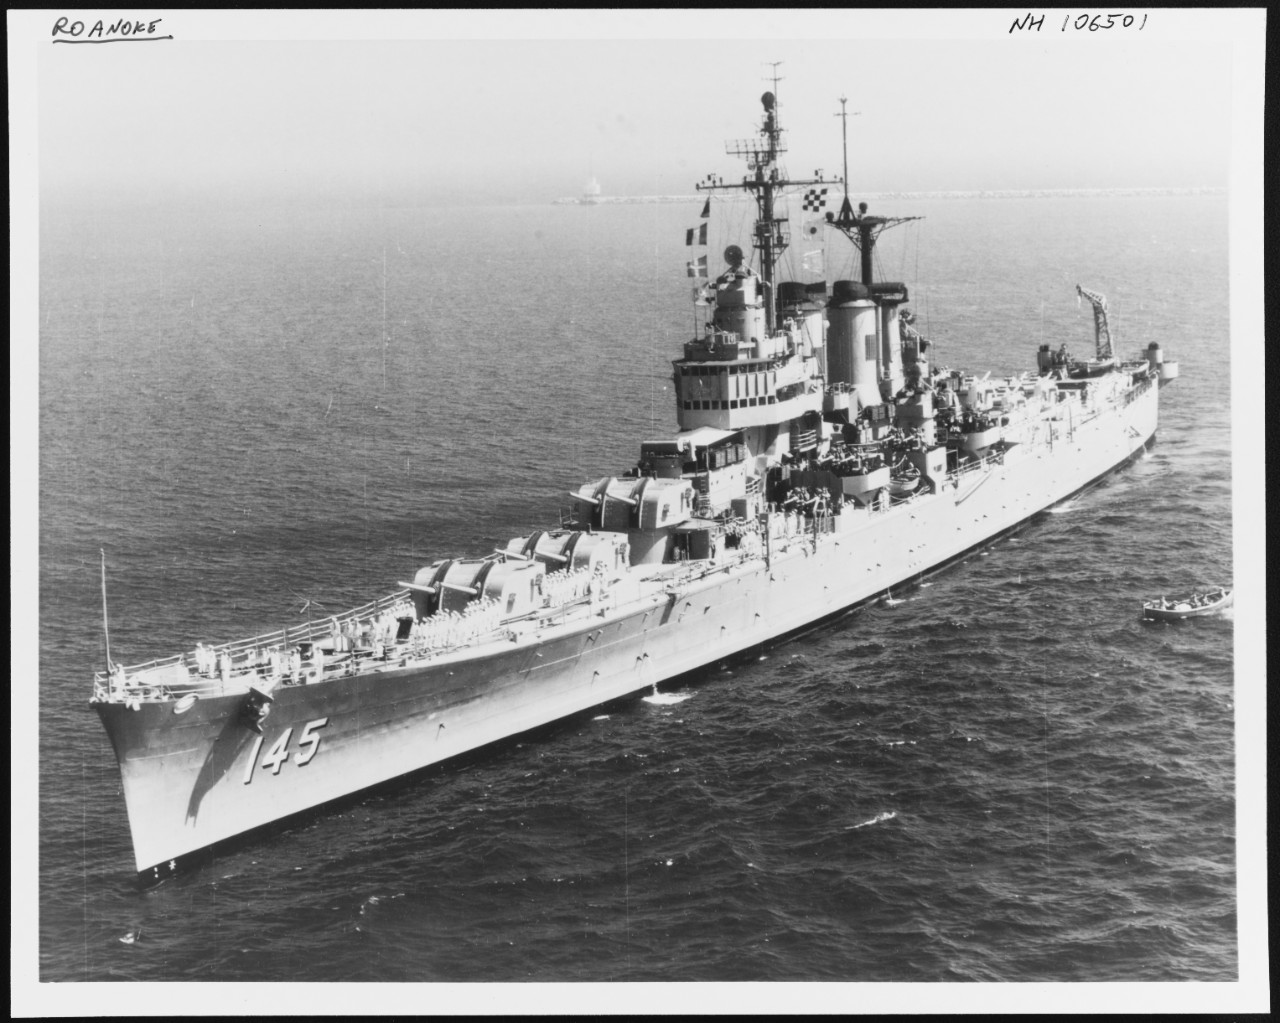 Photo #: NH 106501  USS Roanoke